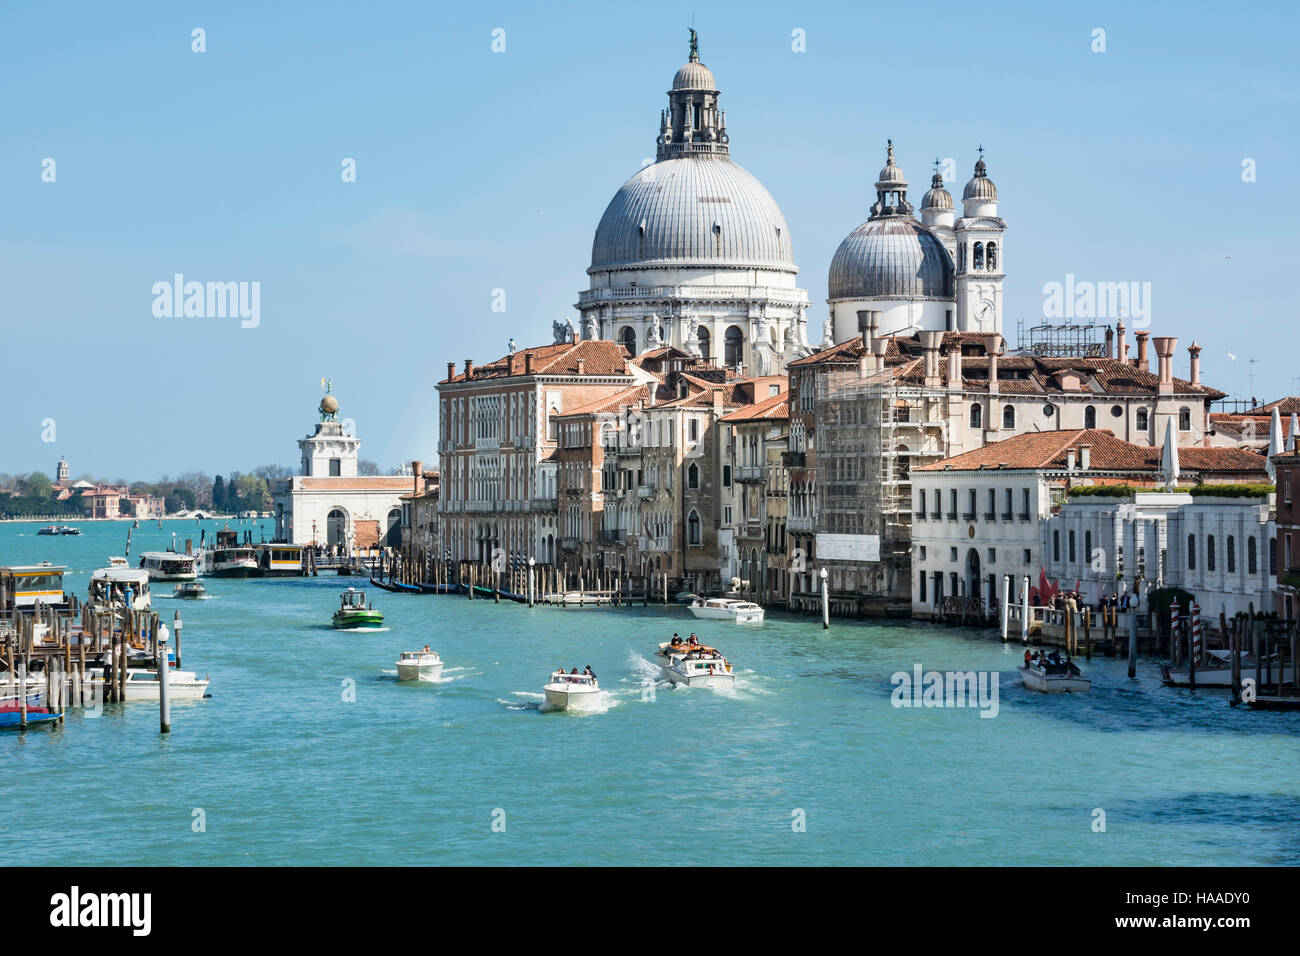 Grand canal and San Giorgio Maggiore, Venice, Italy, Europe Stock Photo